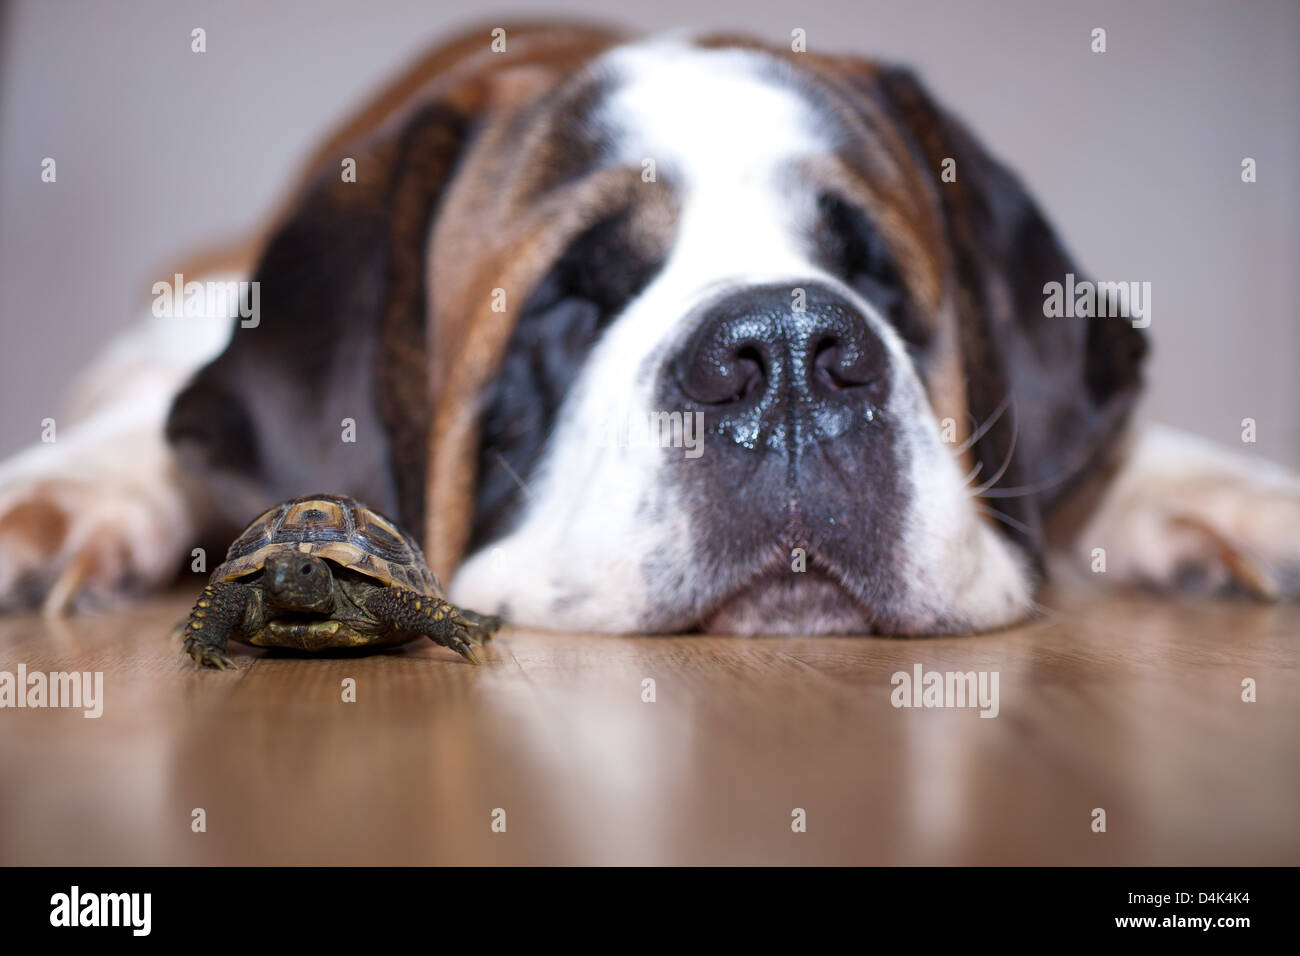 A saint bernard dog fat asleep next to a small tortoise. Stock Photo